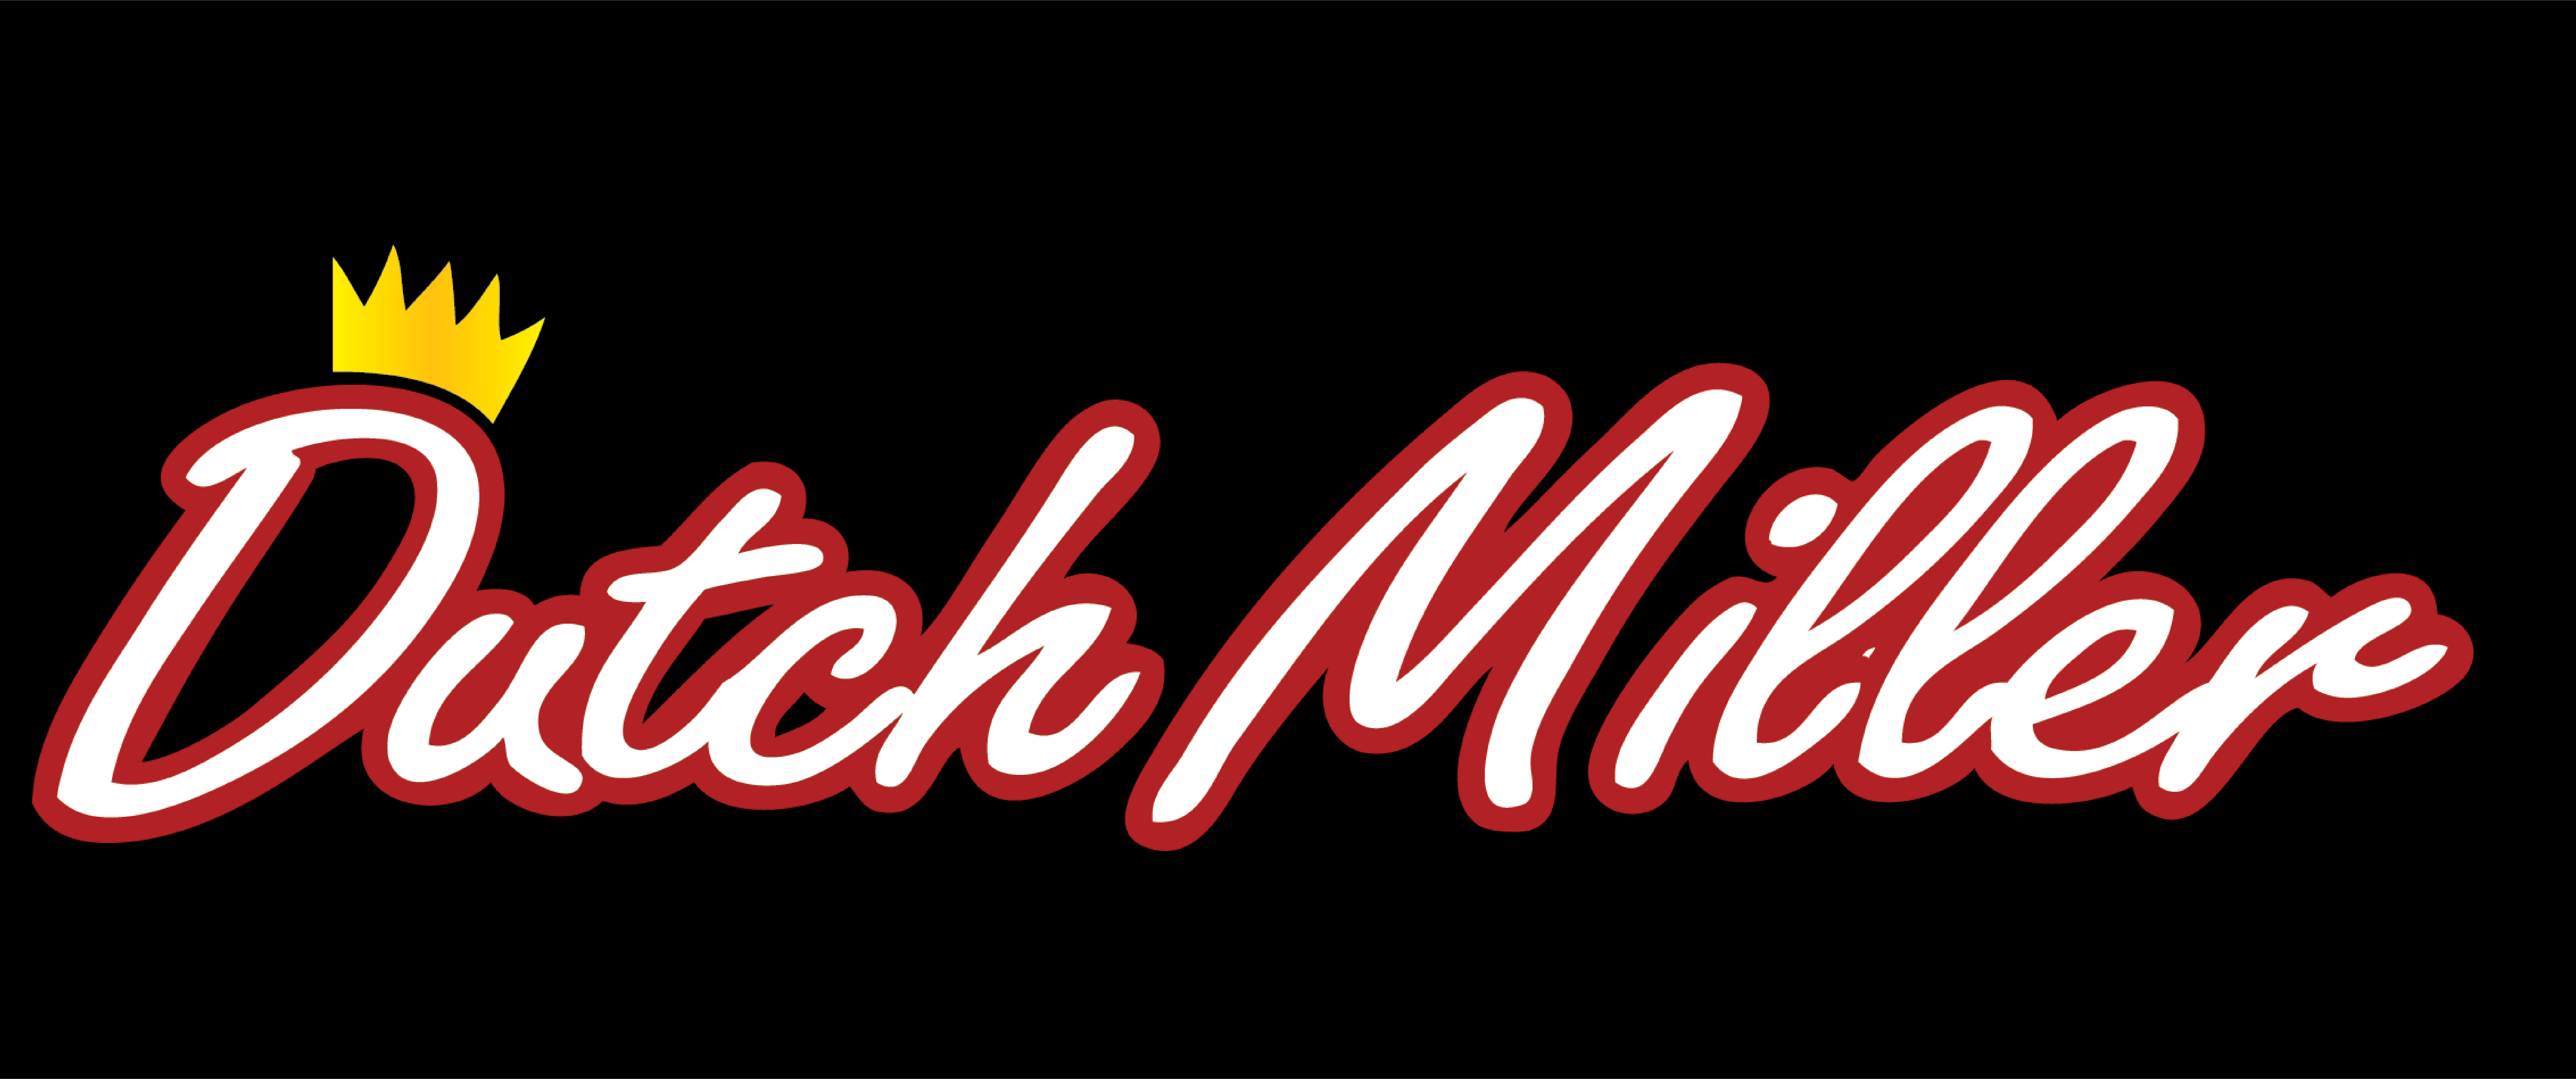 Dutch Miller logo